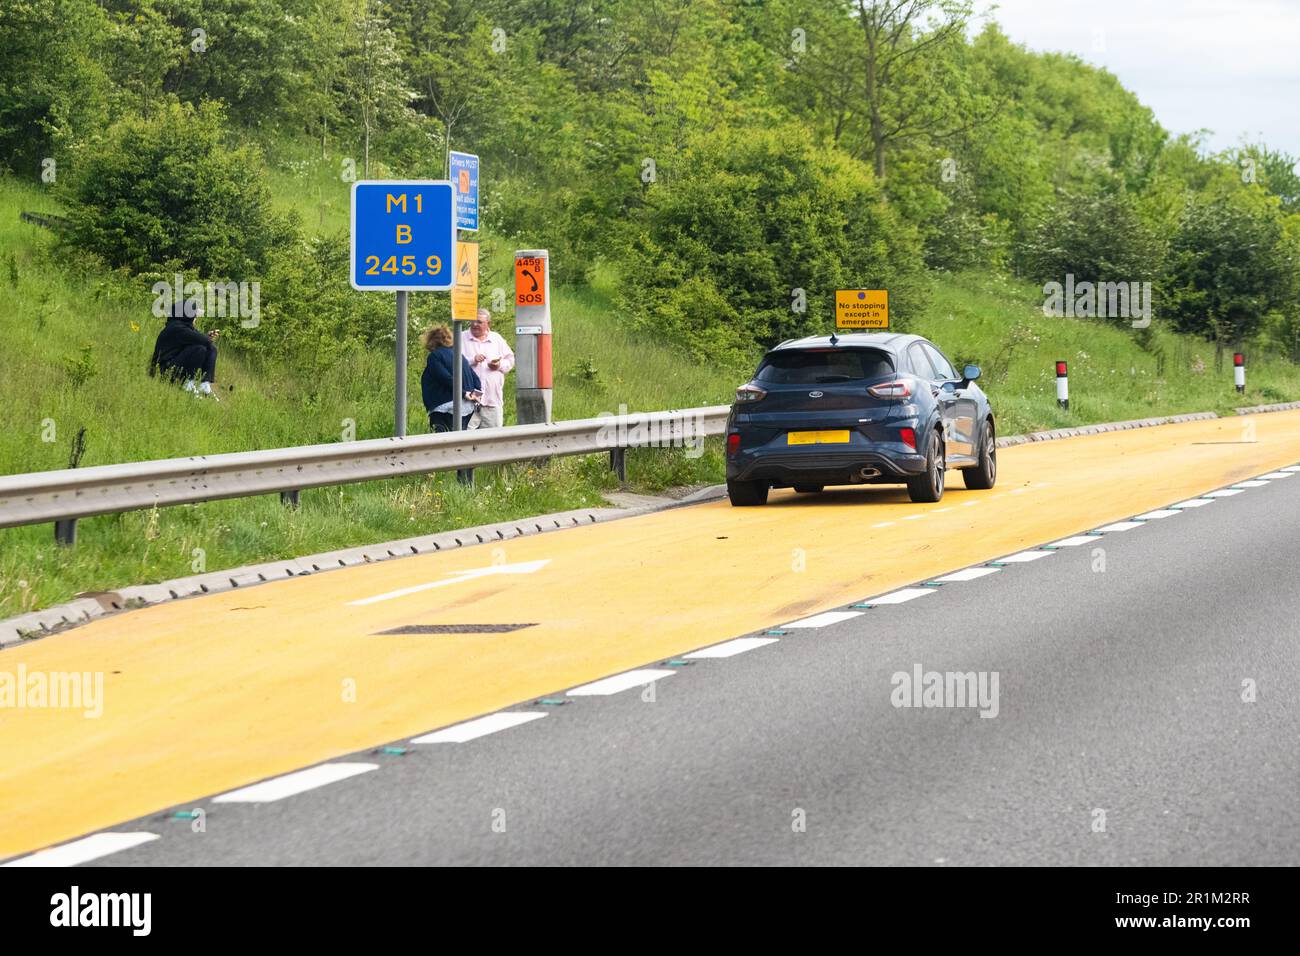 Smart autoroutier Royaume-Uni - voiture en panne garée dans une zone de refuge orange et passagers debout derrière une barrière anti-collision sur la section d'autoroute intelligente de M1 Banque D'Images